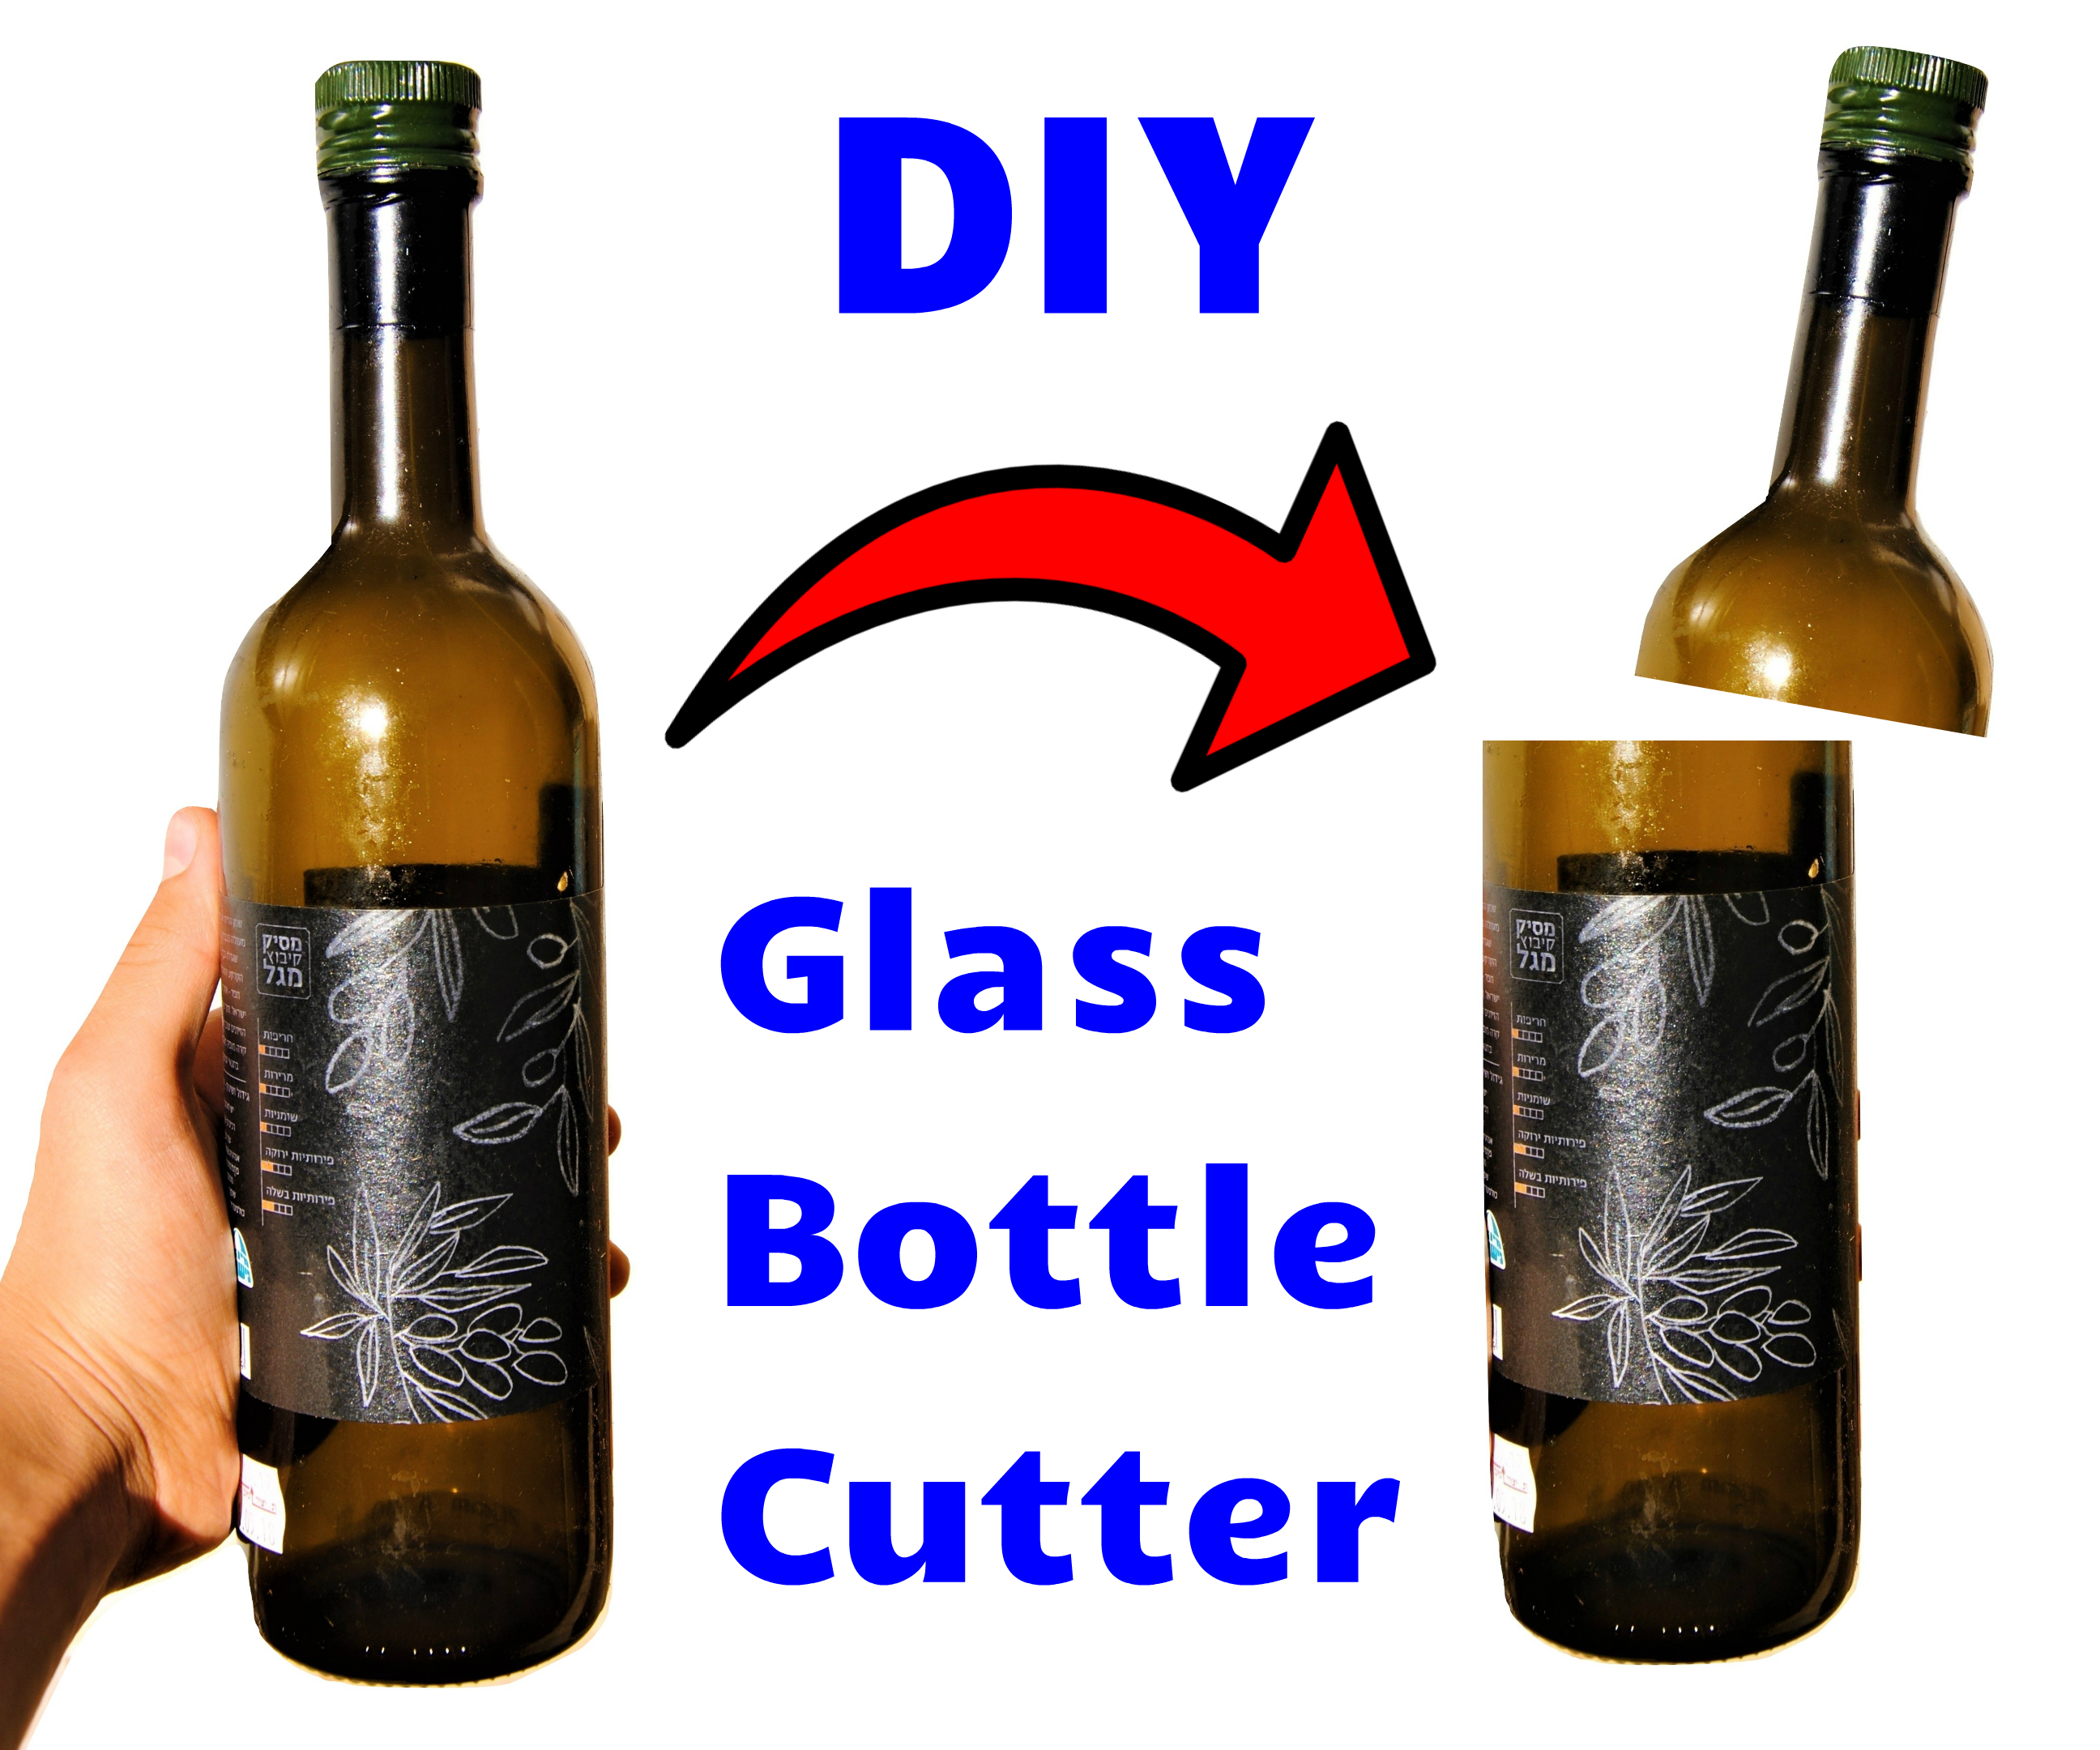 Cut glass wine bottles2.jpg